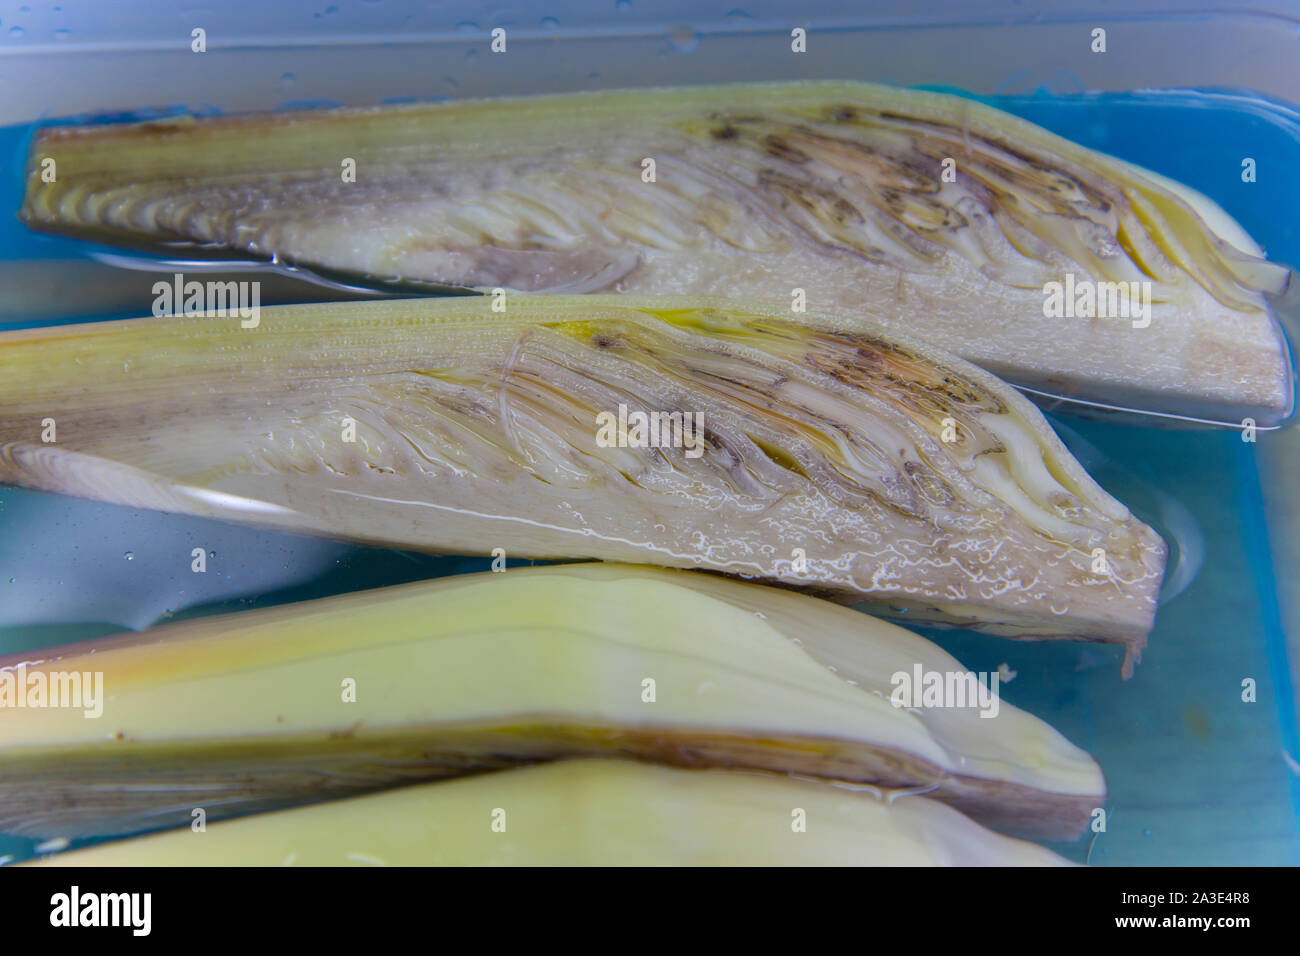 Tranches de banane blossom tremper dans de l'eau pour faire cuire la nourriture thaïe. Galerie d'images haute résolution. Banque D'Images